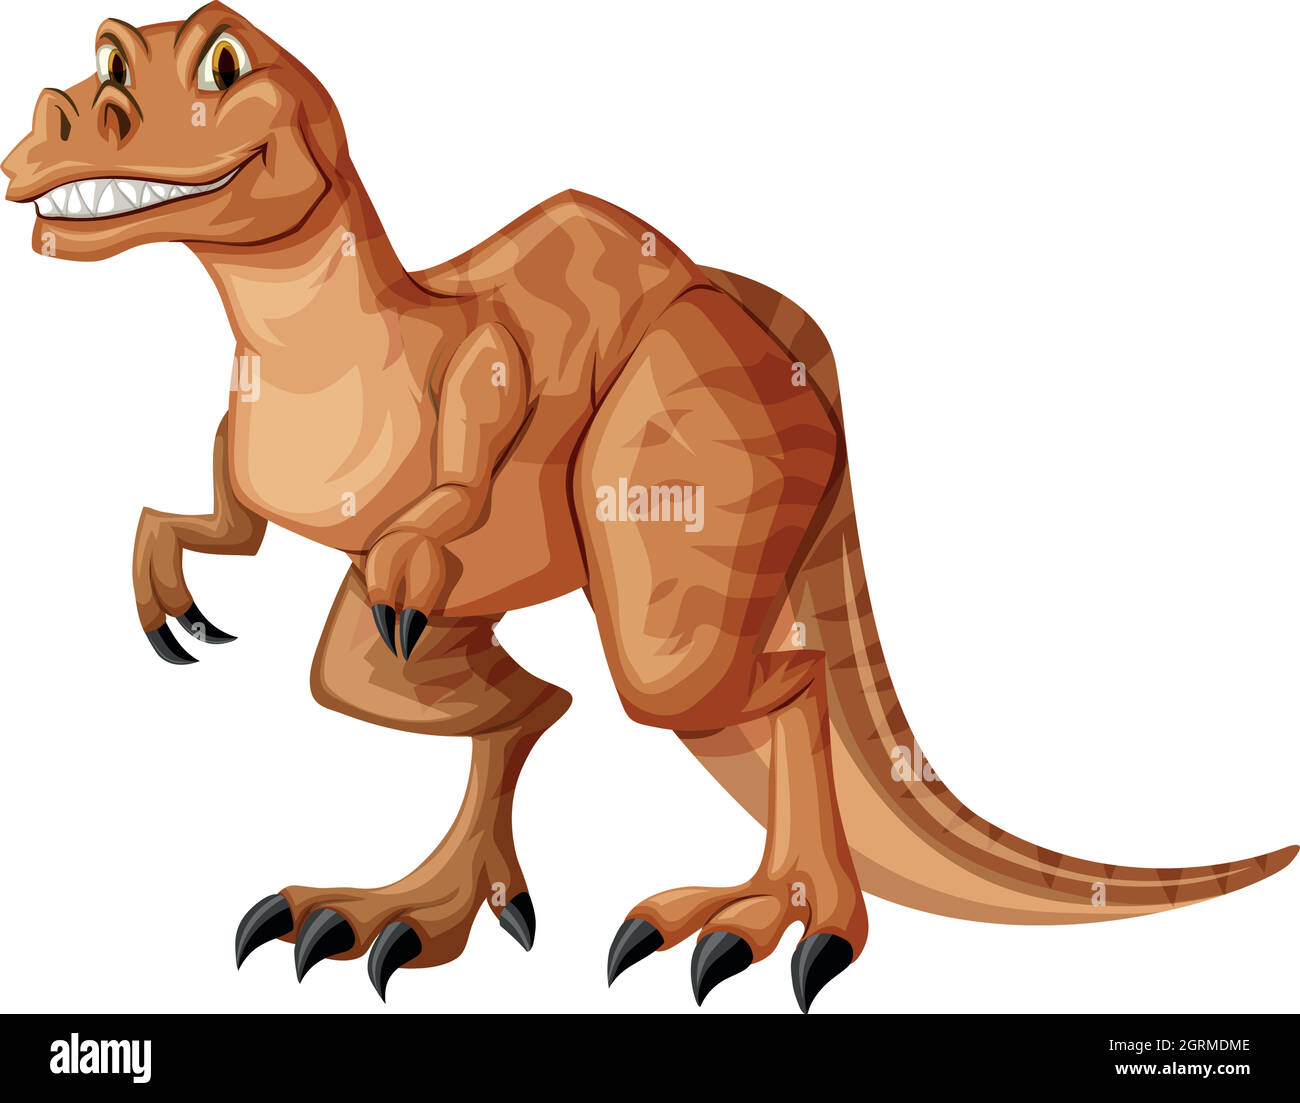 Dinosaur with sharp teeth Stock Vector